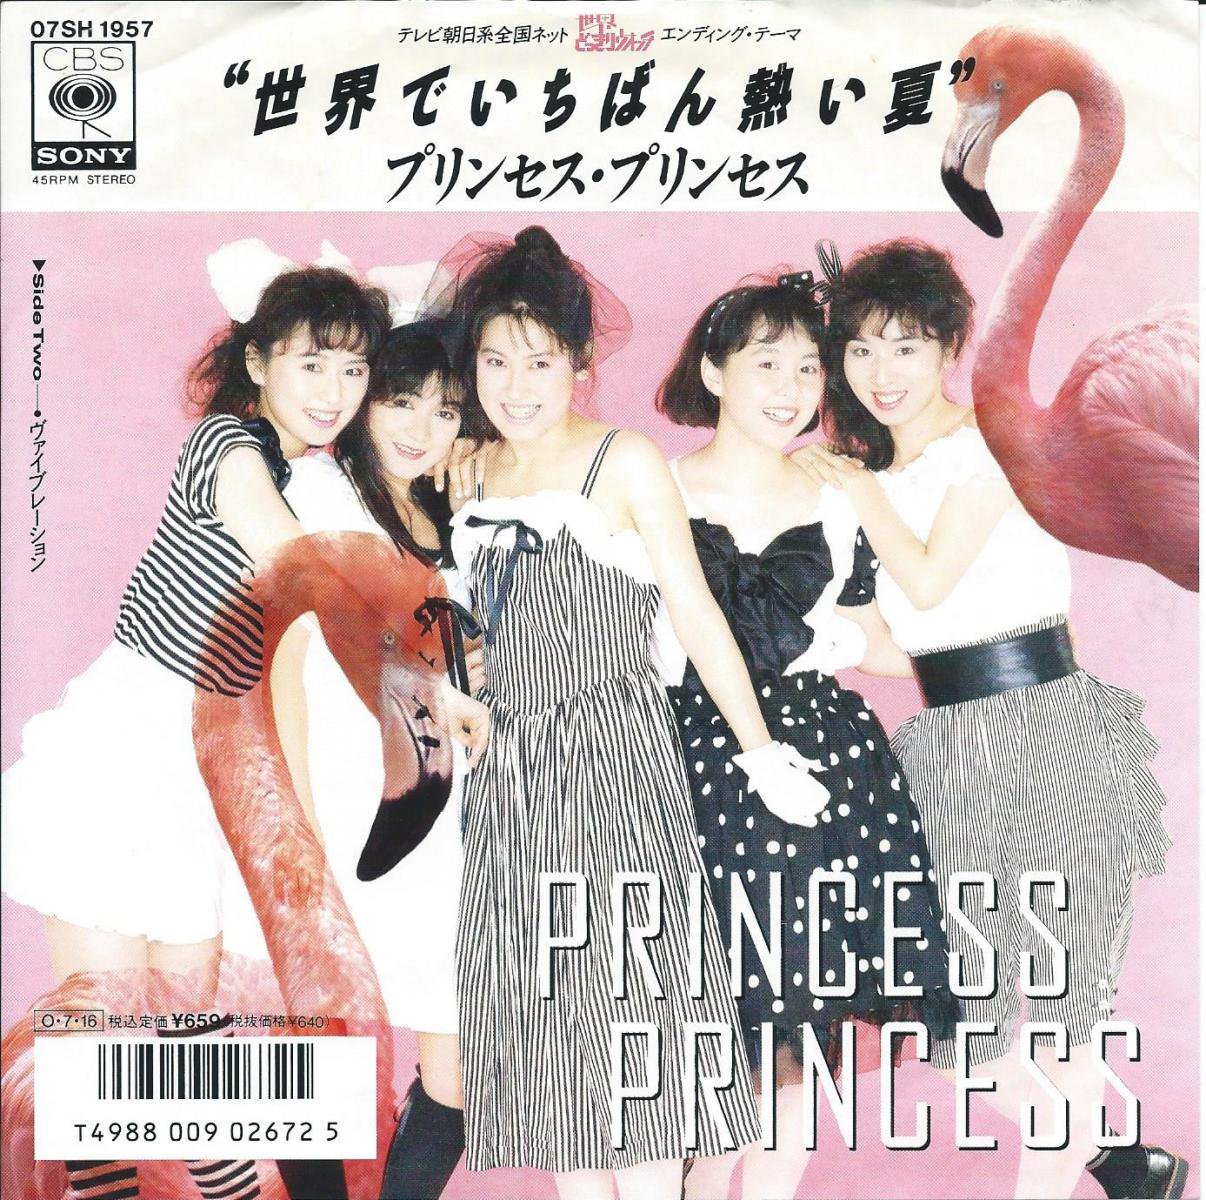 プリンセス プリンセス Princess Princess 世界でいちばん熱い夏 7 Hip Tank Records